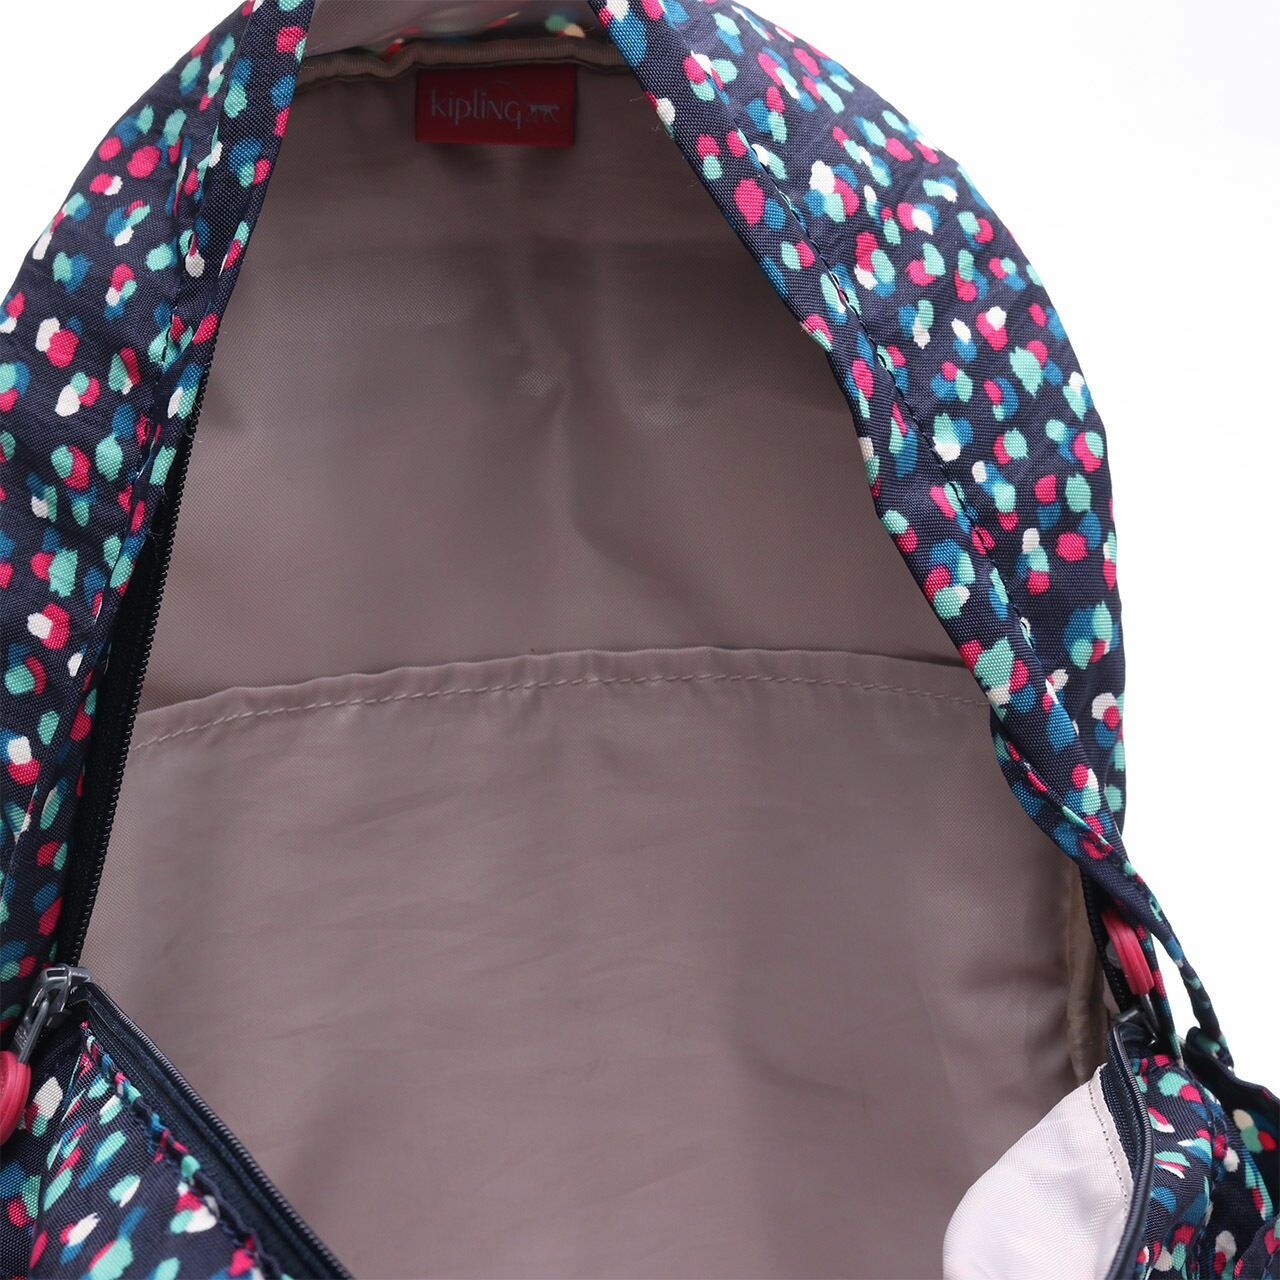 Kipling Navy/Fuchsia Patterned ;Backpack